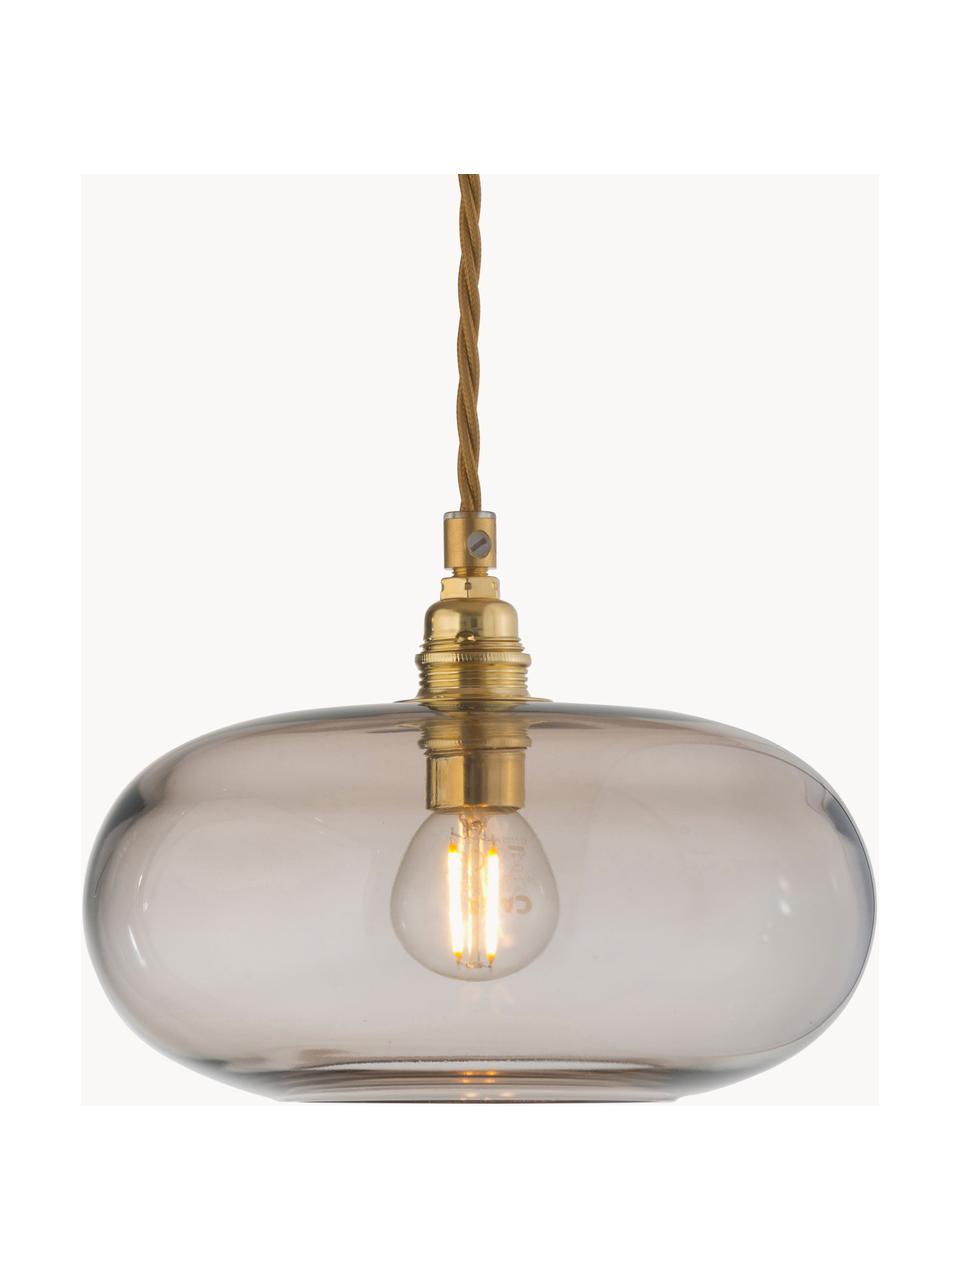 Lámpara de techo pequeño Horizon, Pantalla: vidrio tintado, Estructura: metal recubierto, Cable: cubierto en tela, Beige, dorado, Ø 21 x Al 14 cm